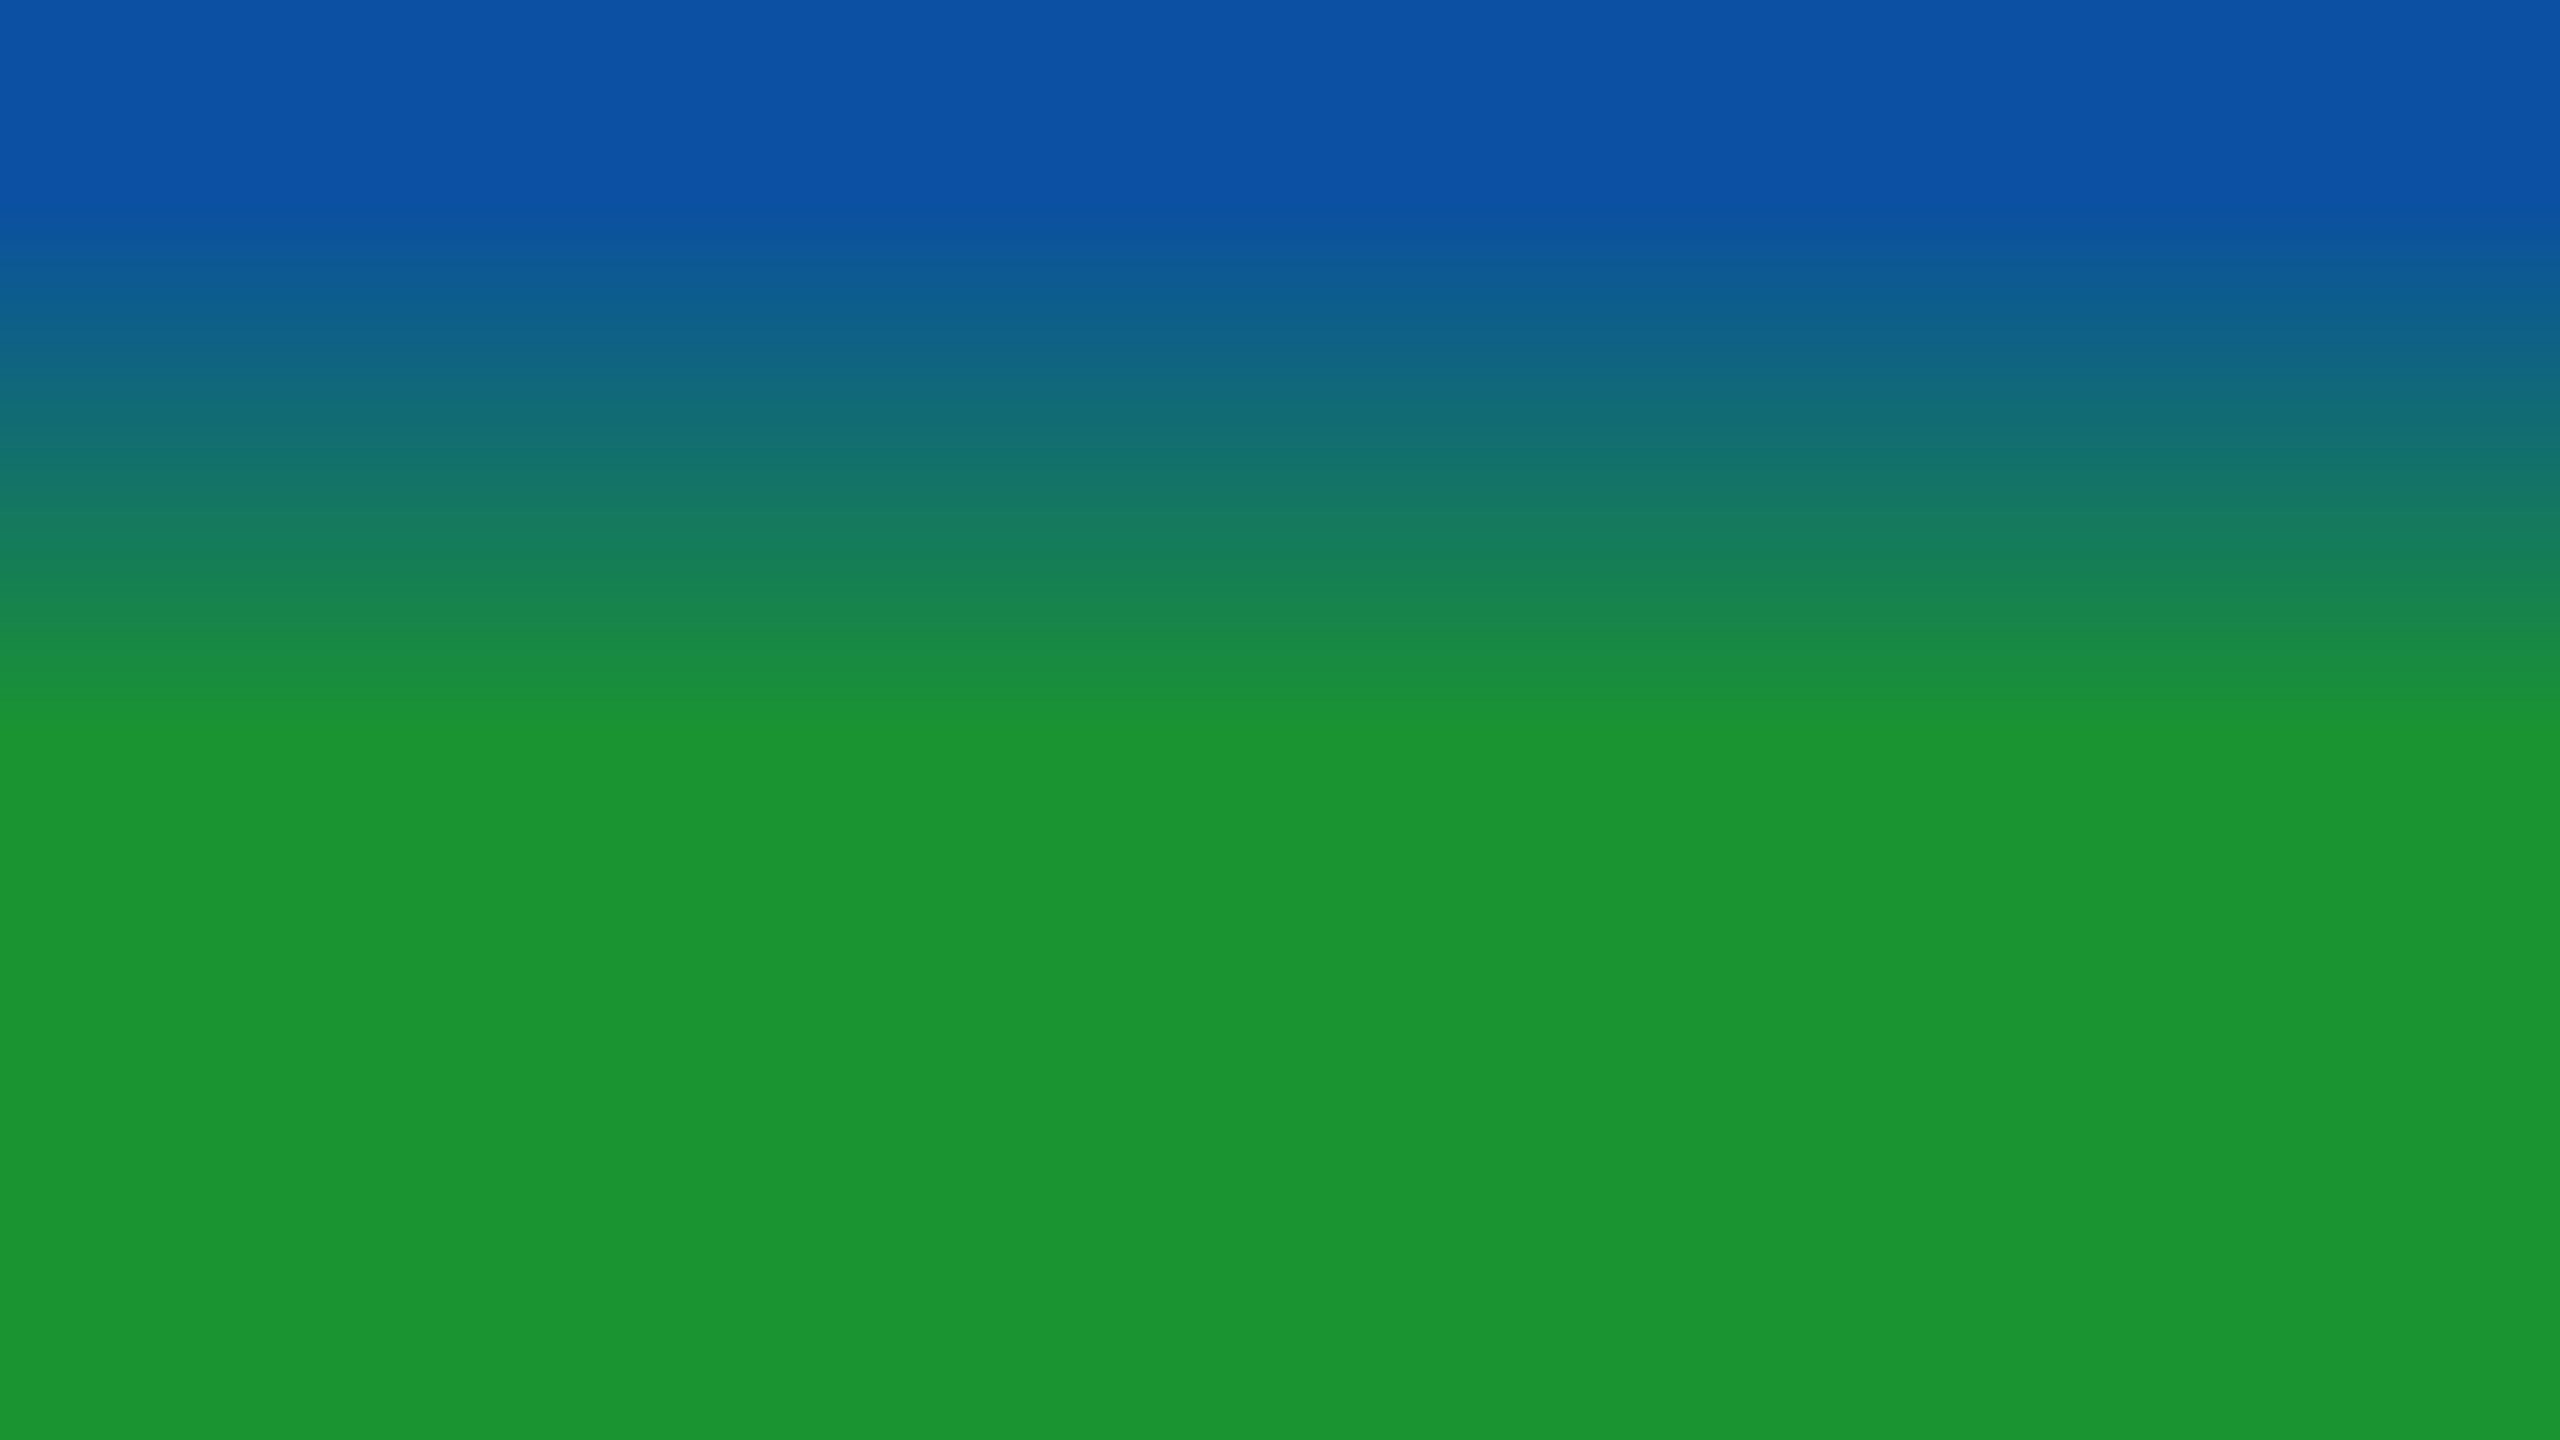 간단한 컬러 벽지,초록,푸른,아쿠아,터키 옥,낮